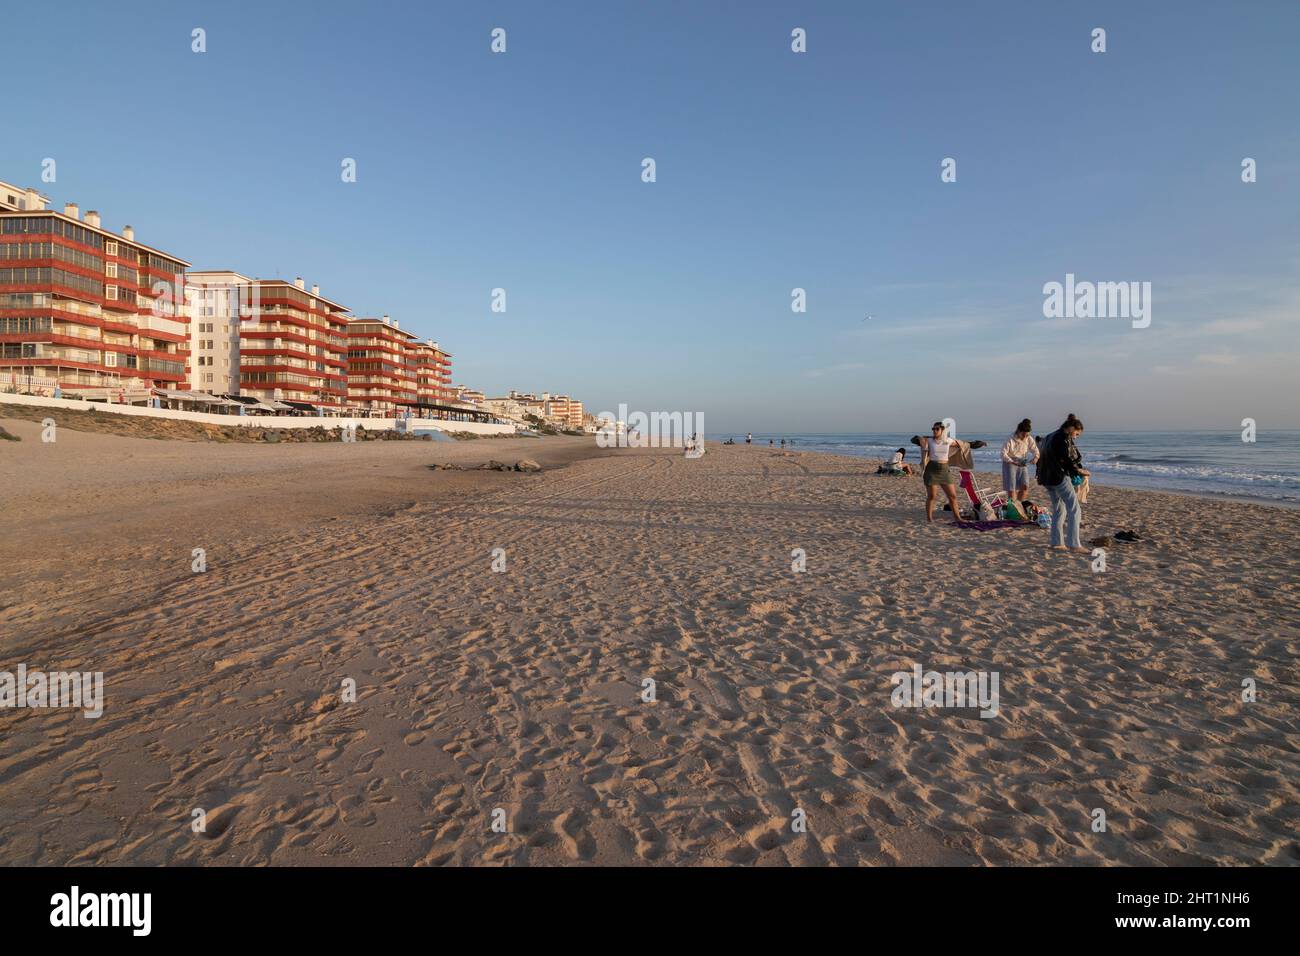 Matalascañas, Huelva, Espagne. 2.26.2022: Personnes sur la plage au milieu de l'hiver, avec plus de 25 degrés. Banque D'Images